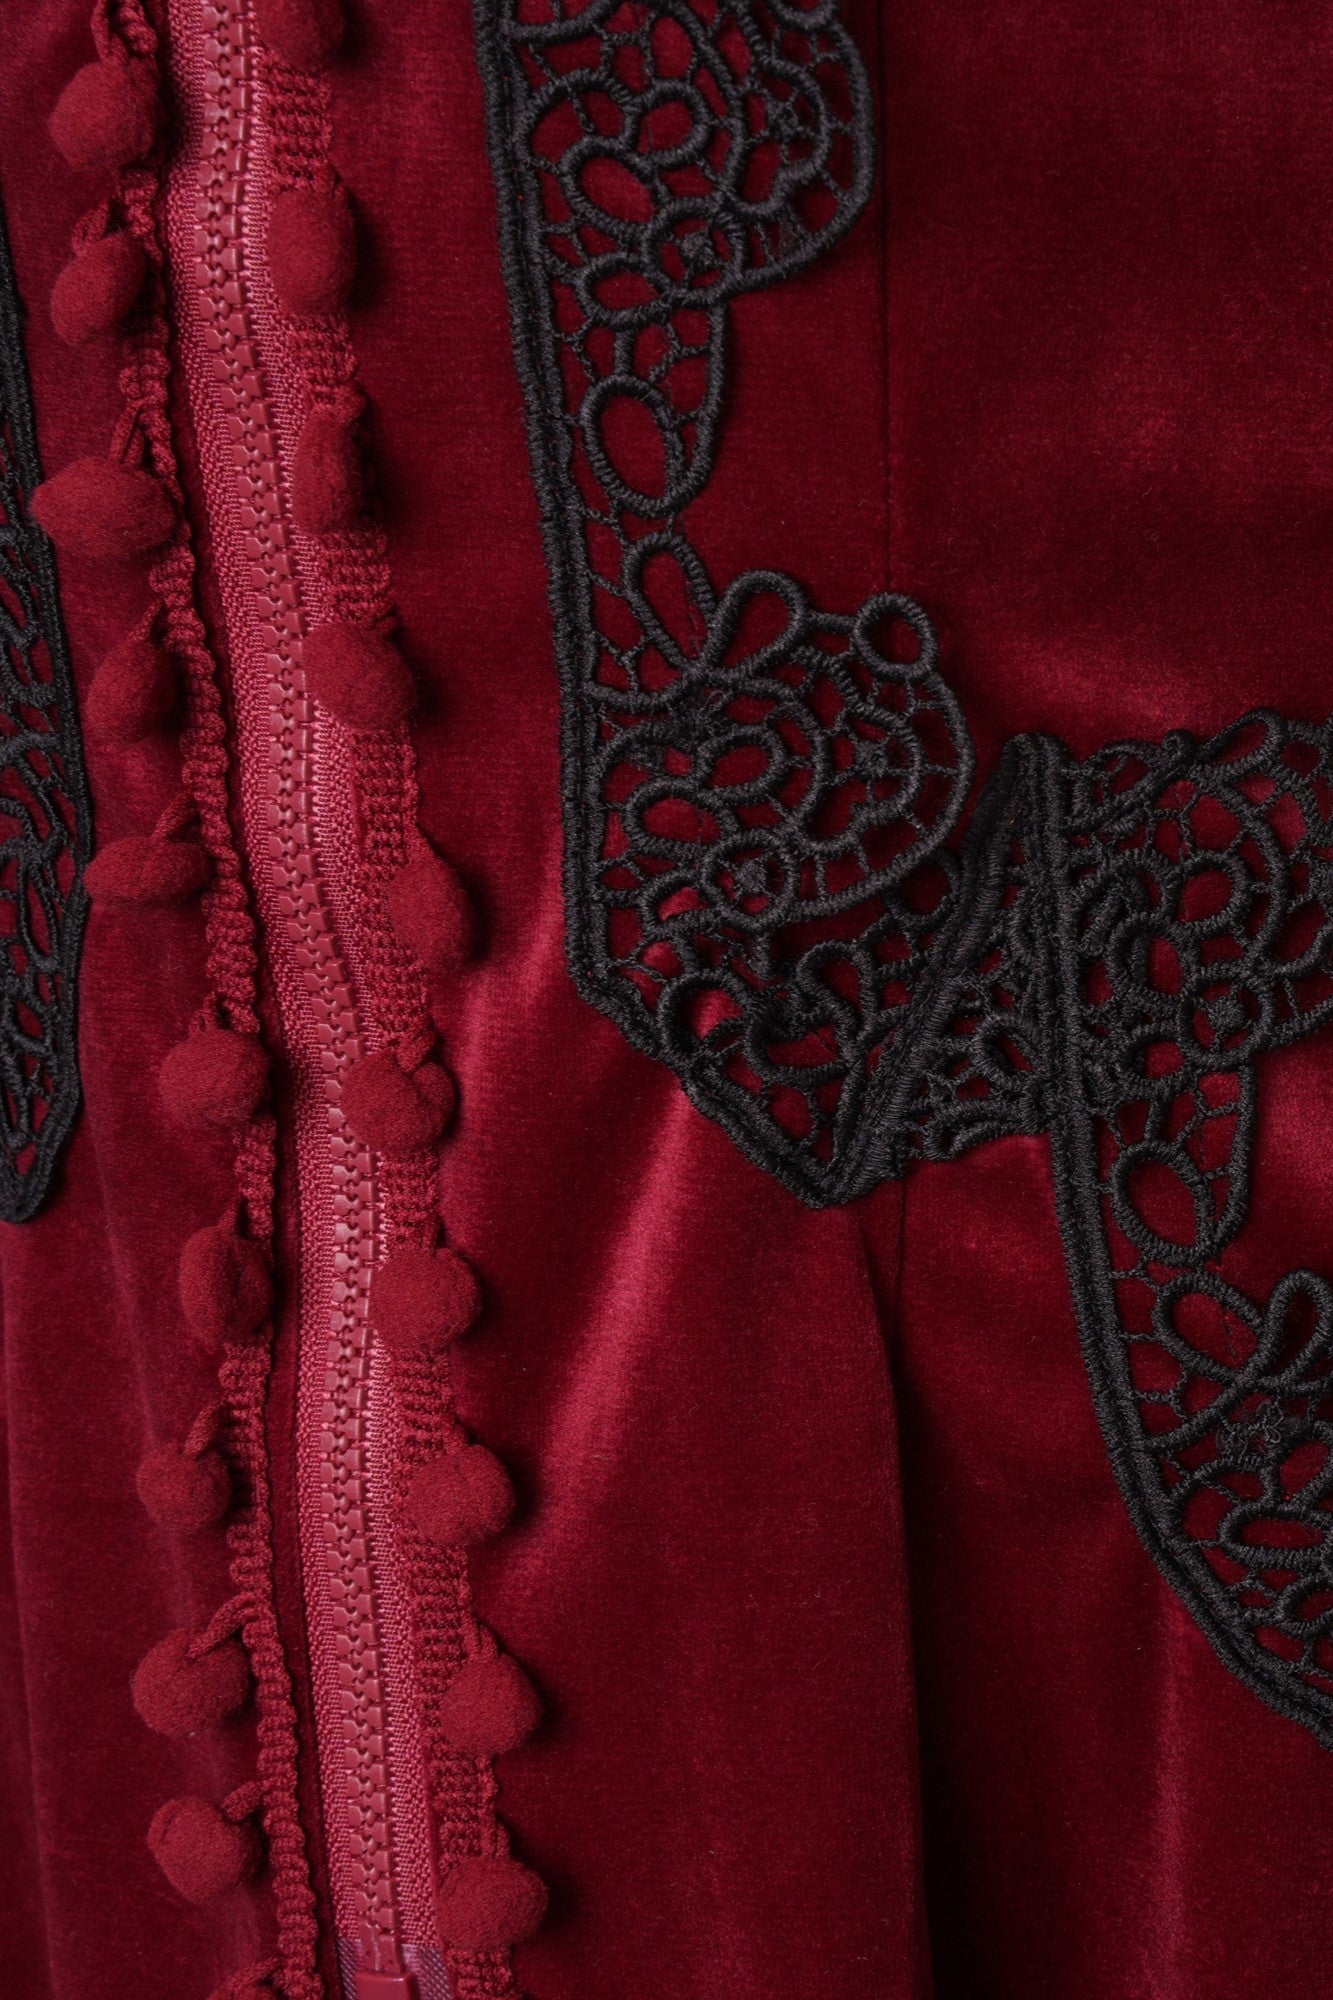 Ro Rox Celeste High Collar Long Sleeve Gothic Velvet Coat, Burgundy